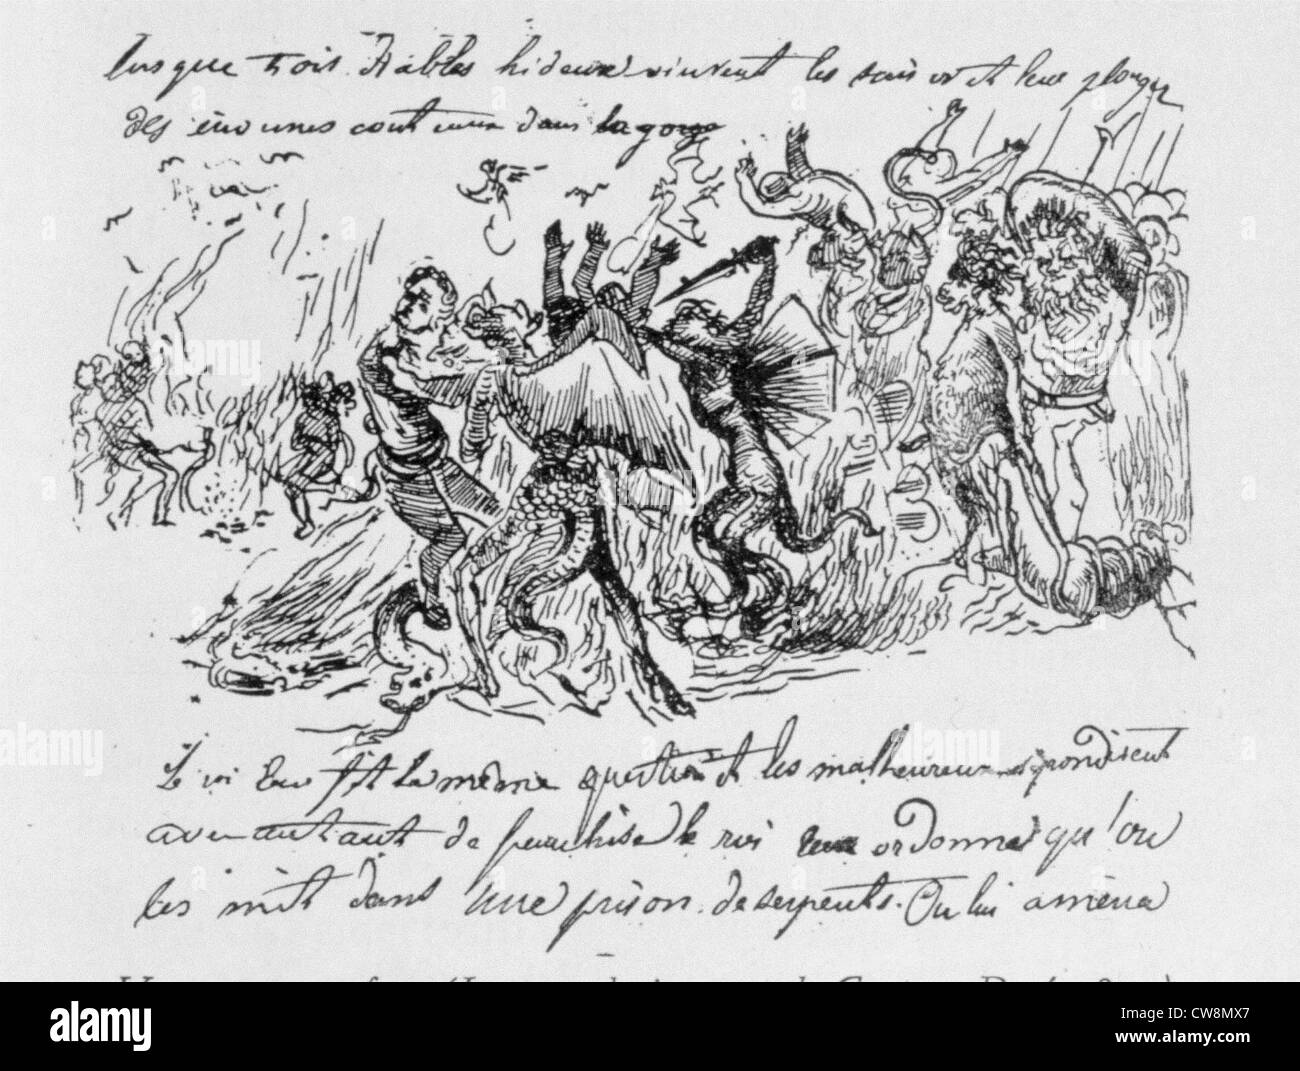 Voyage vers l'inframonde, illustration par Gustave Doré Banque D'Images